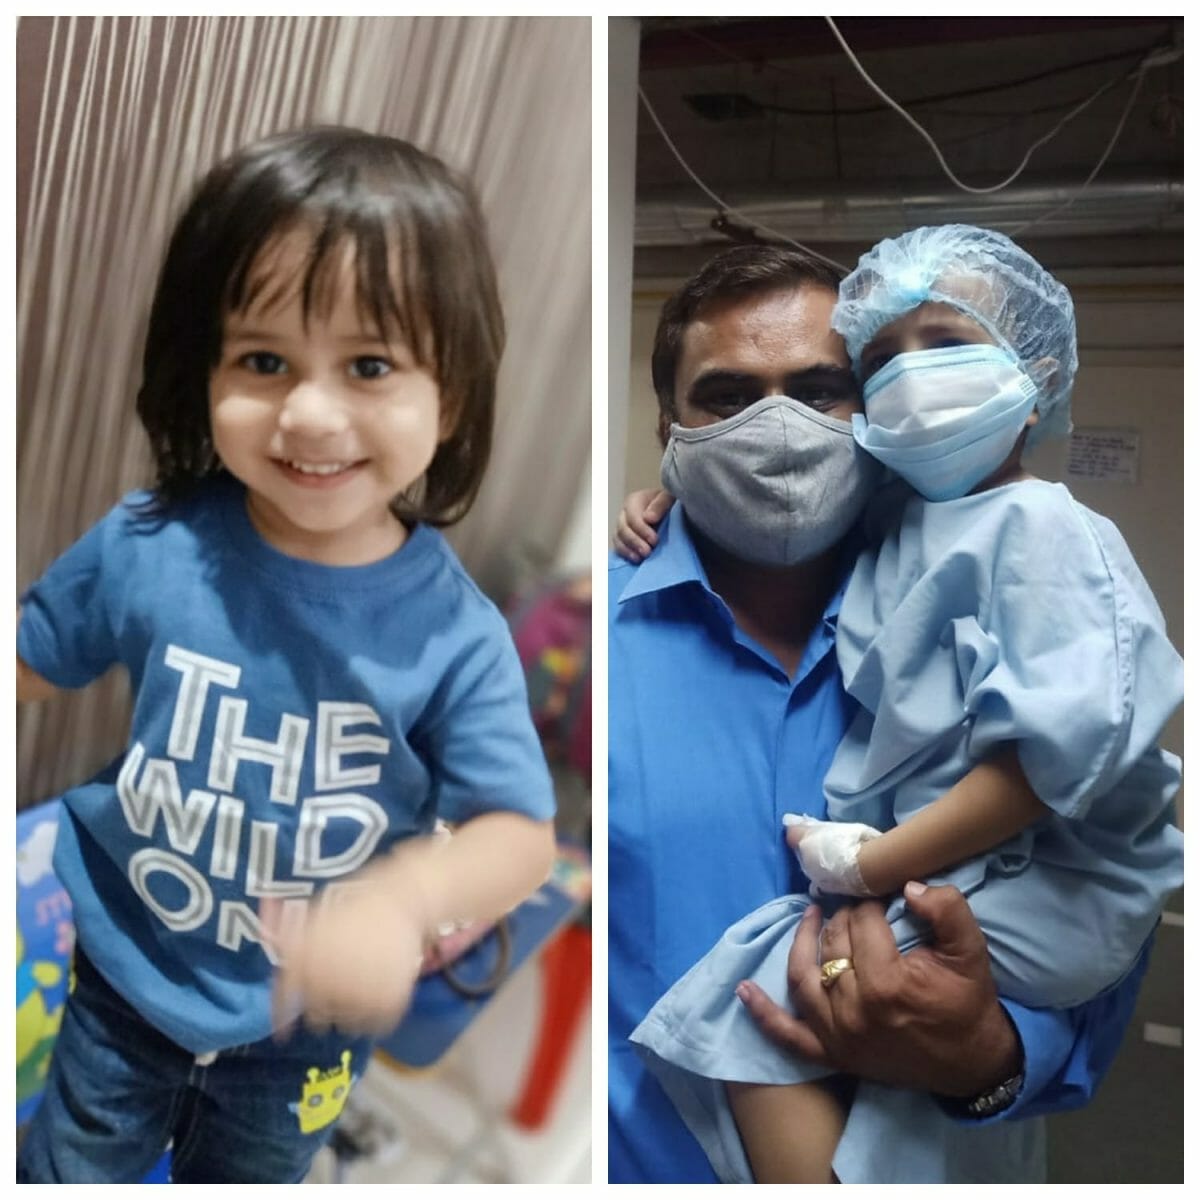 Indore : मासूम ने निगला मैग्नेटिक स्टार, ऑपरेशन के बाद बच्चे की मौत, परिजनों ने अस्पताल पर लगाया लापरवाही का आरोप